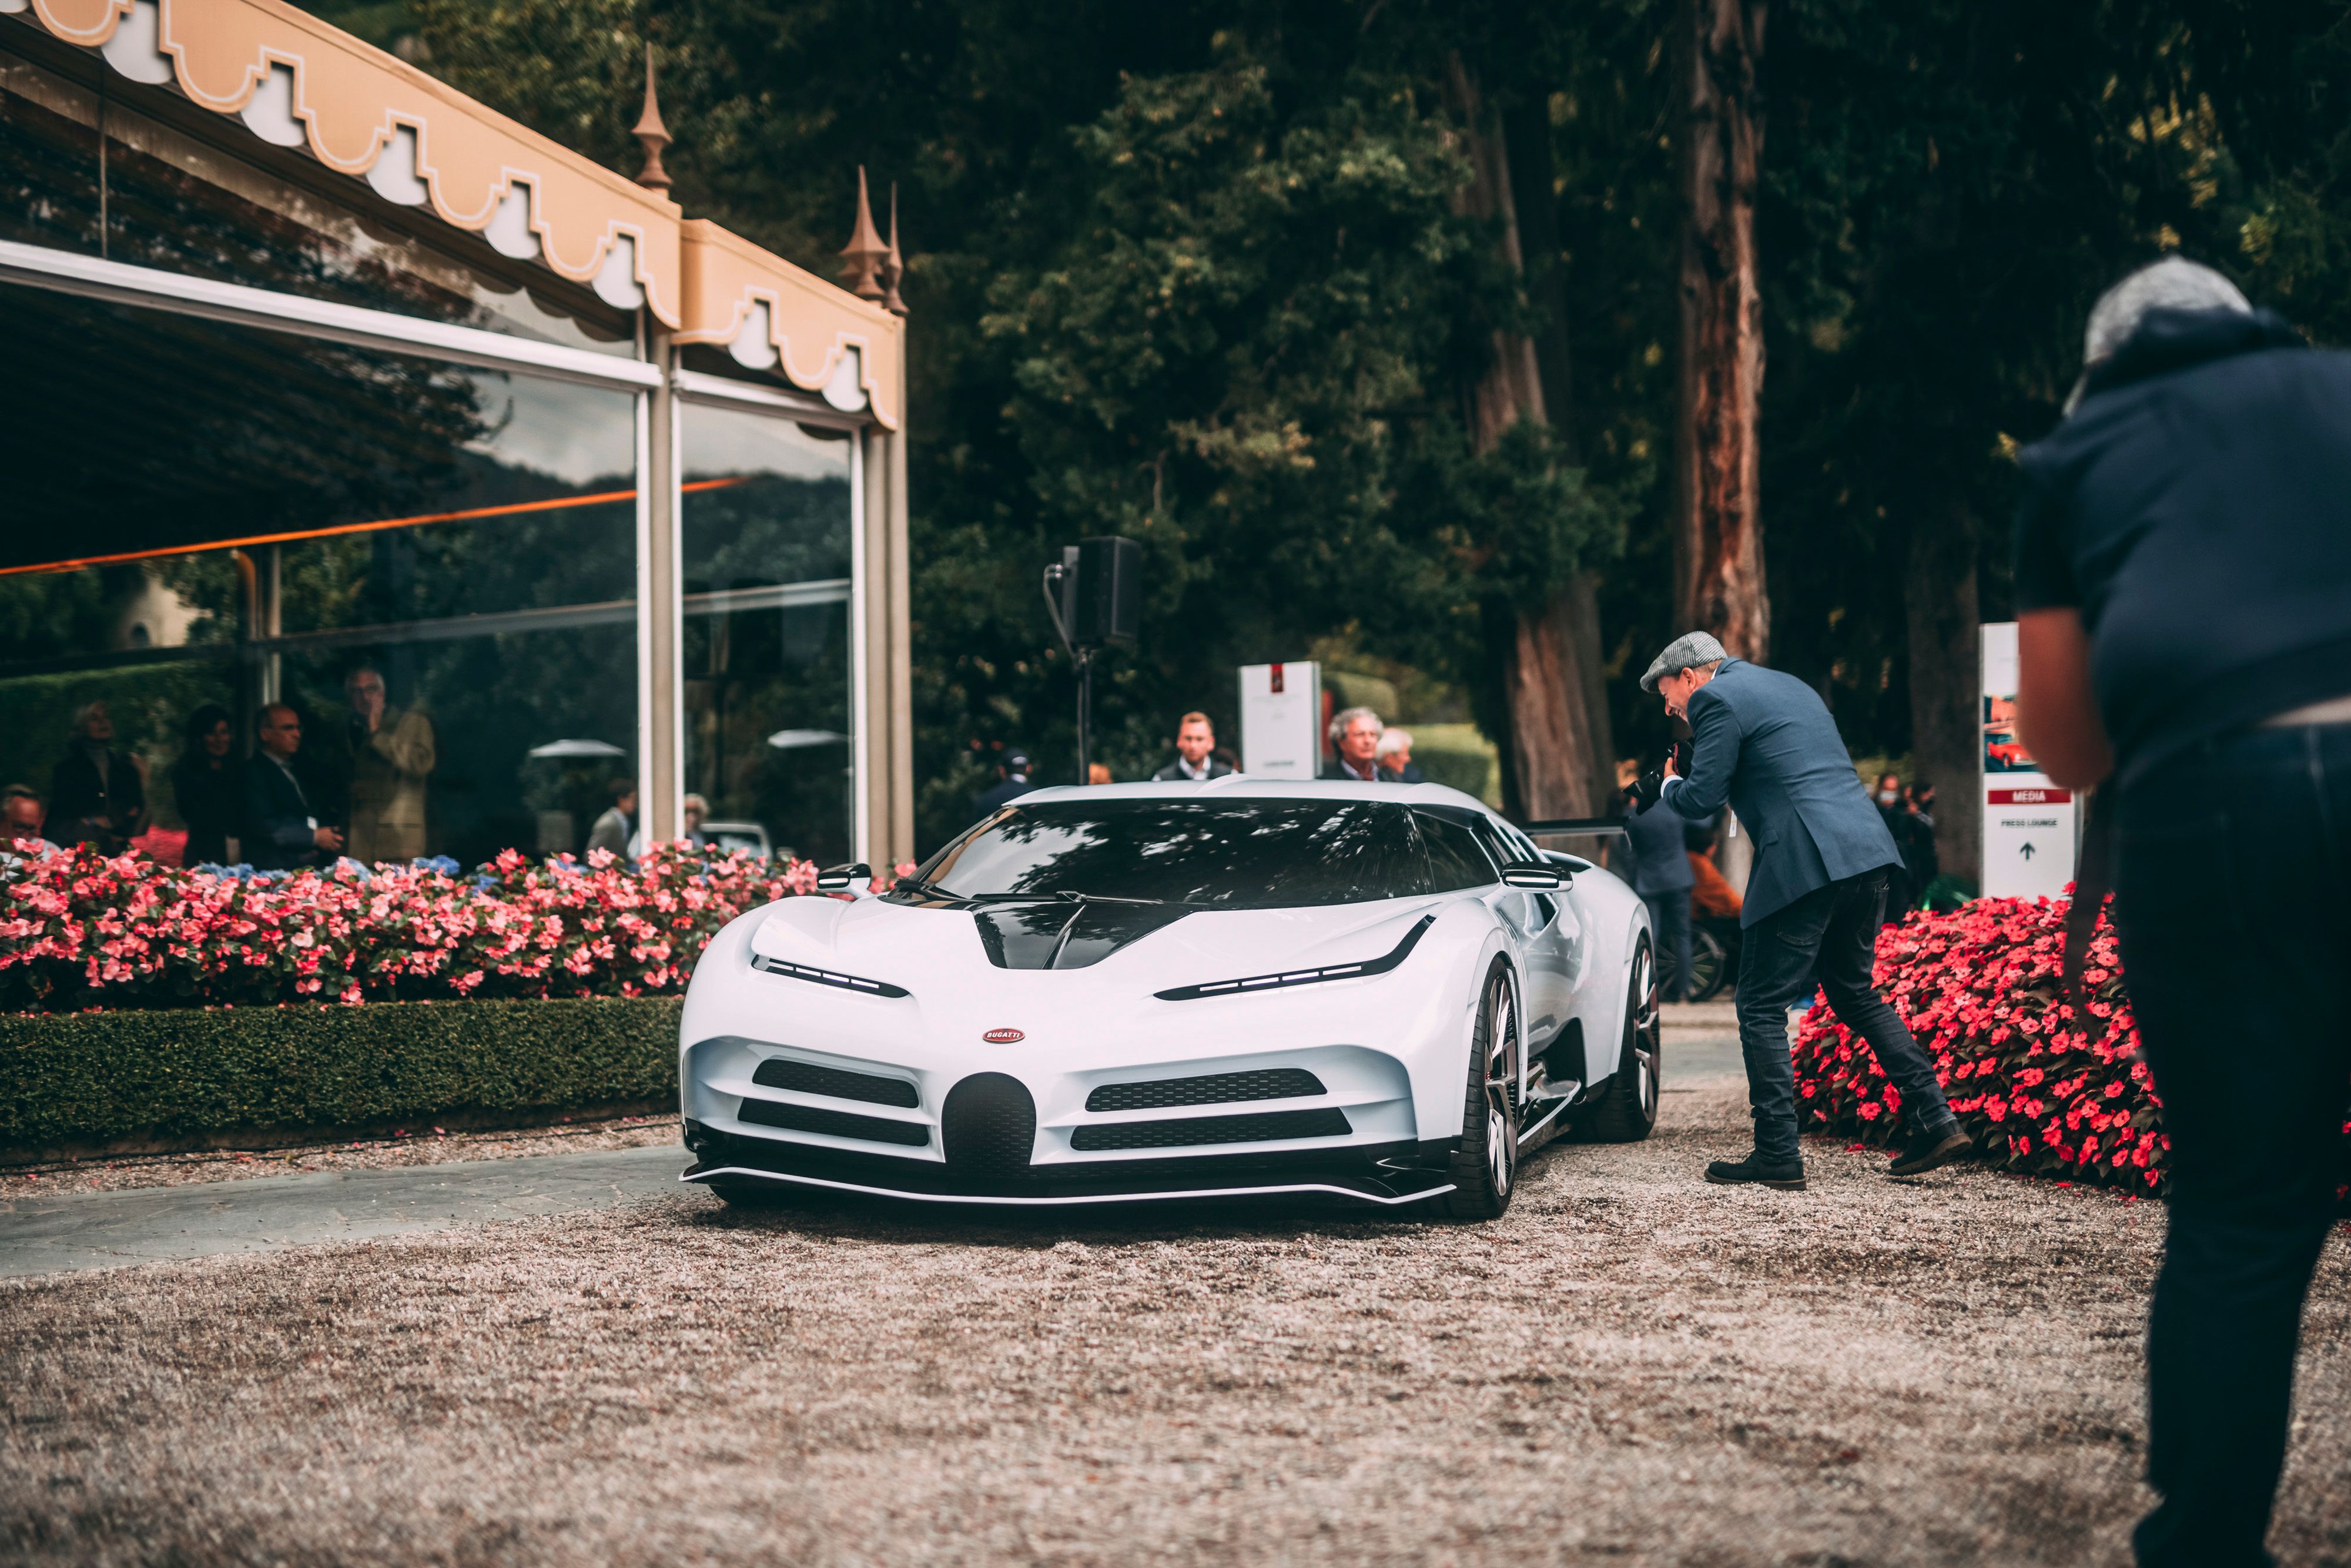 2020 Bugatti Centodieci